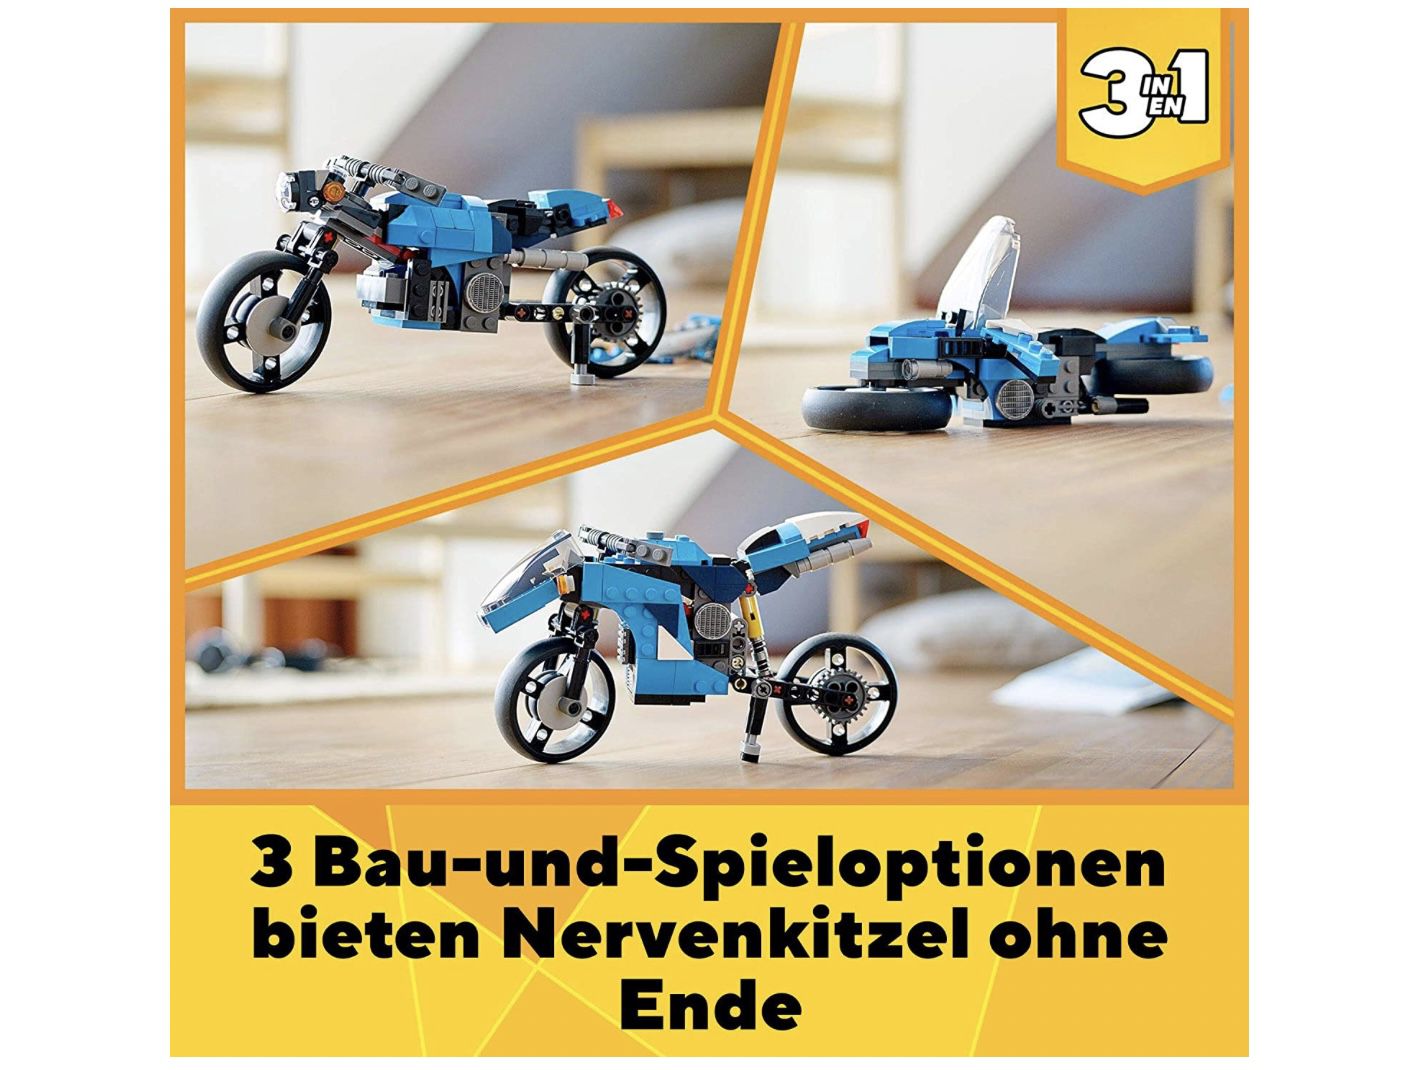 LEGO 31114 Creator 3 In 1 Geländemotorrad für 13,19€ (statt 15€)   Prime